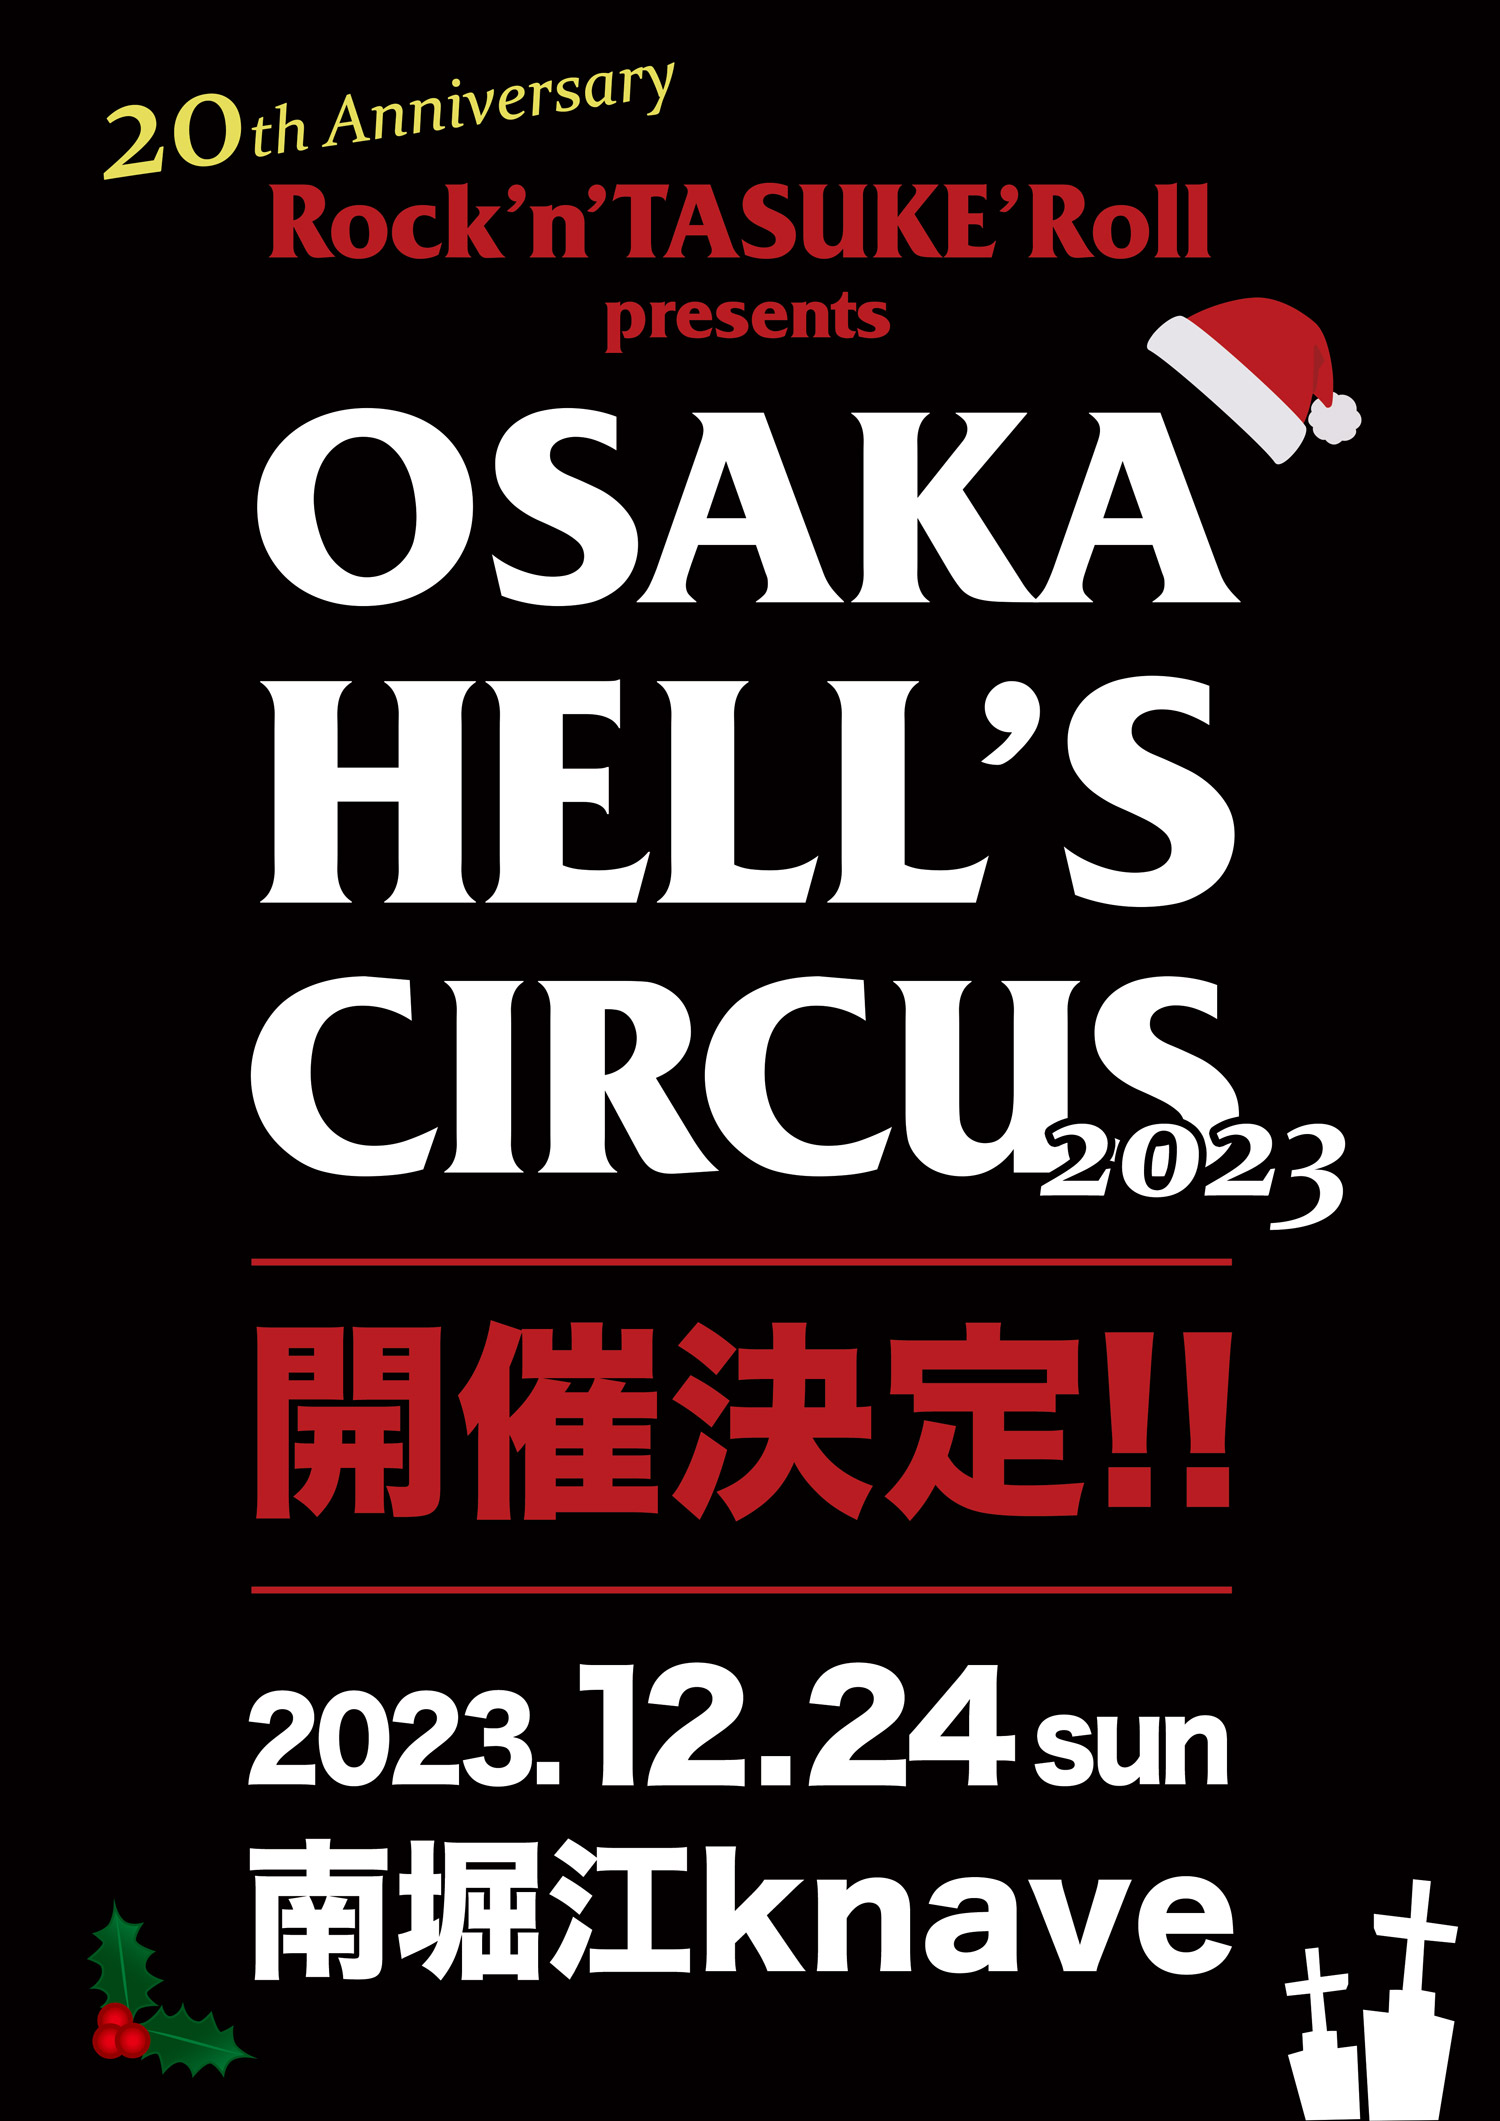 「OSAKA HELL'S CIRCUS 2023」